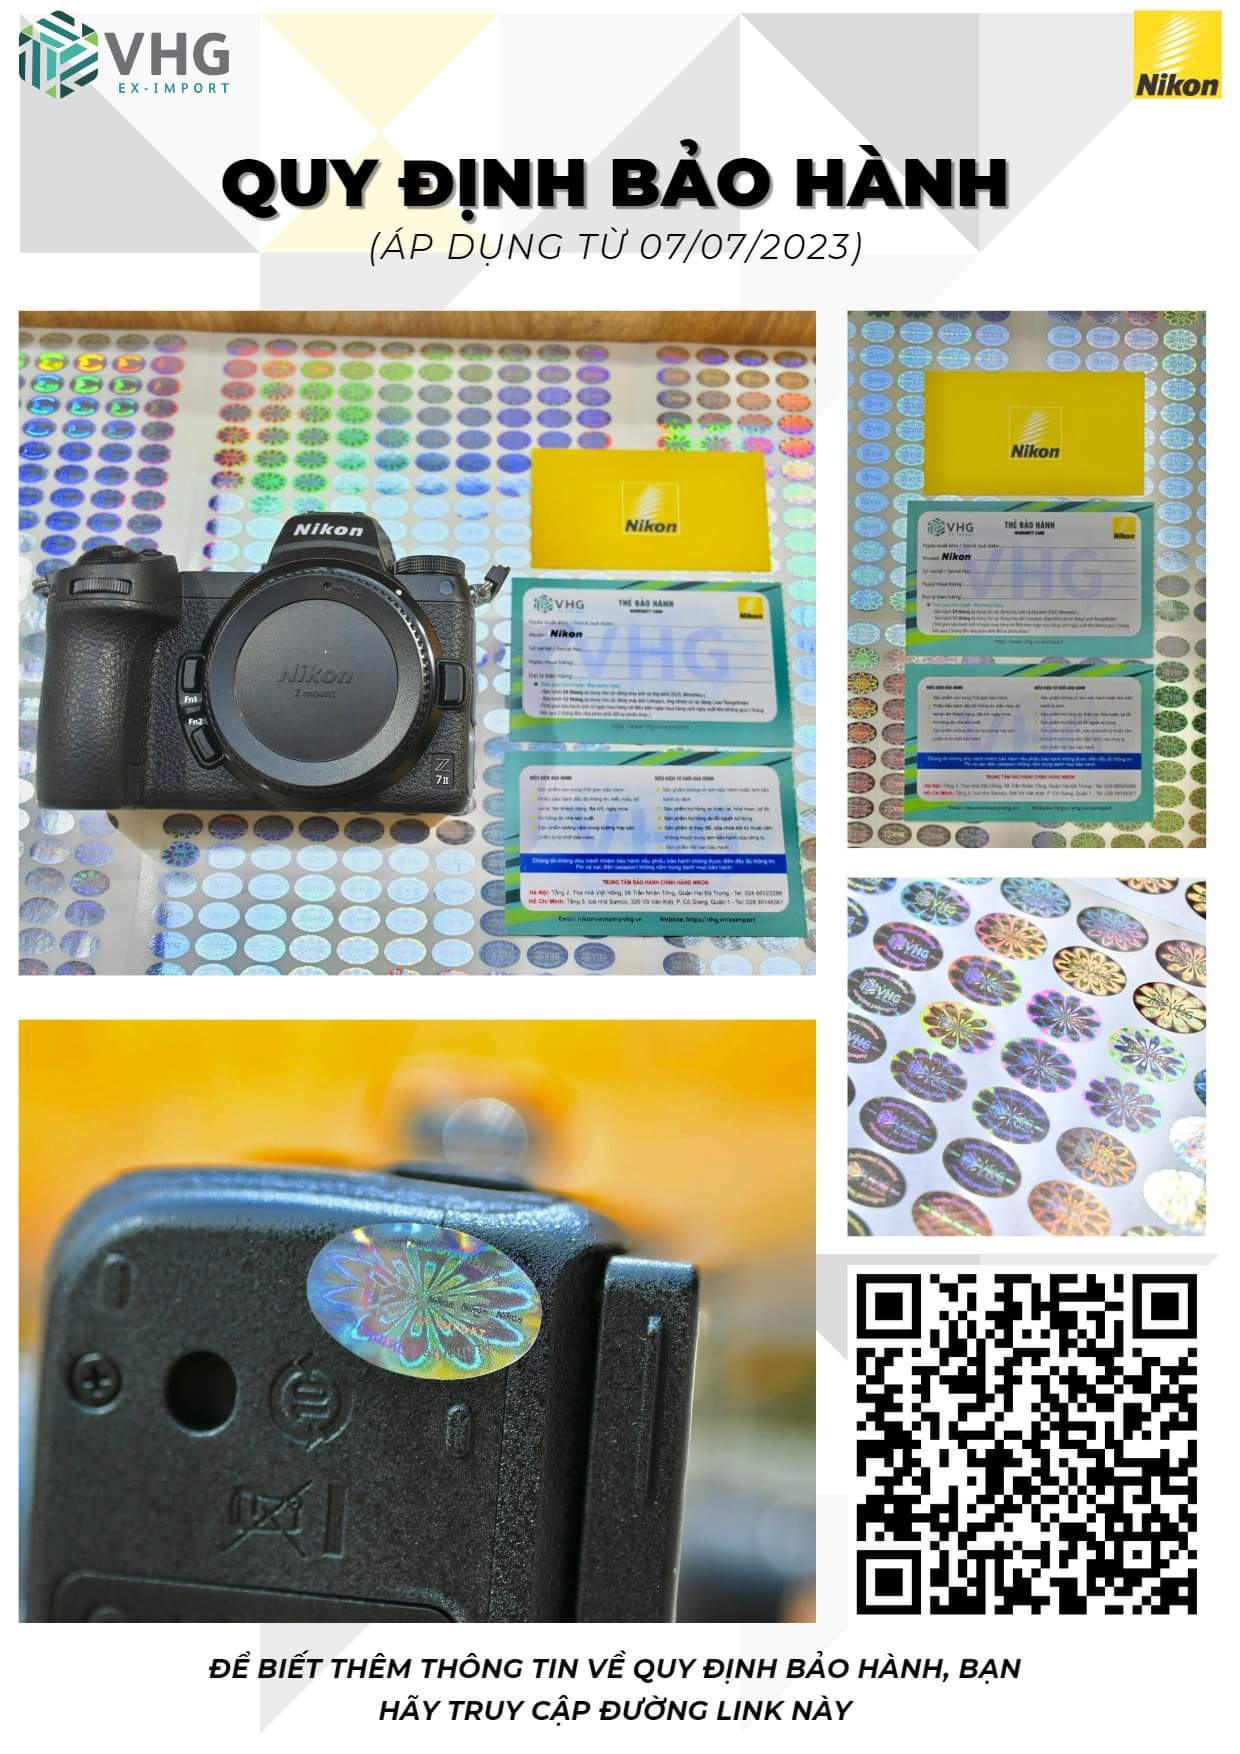 Nikon Vietnam bảo vệ khách hàng với quyền lợi bảo hành mới